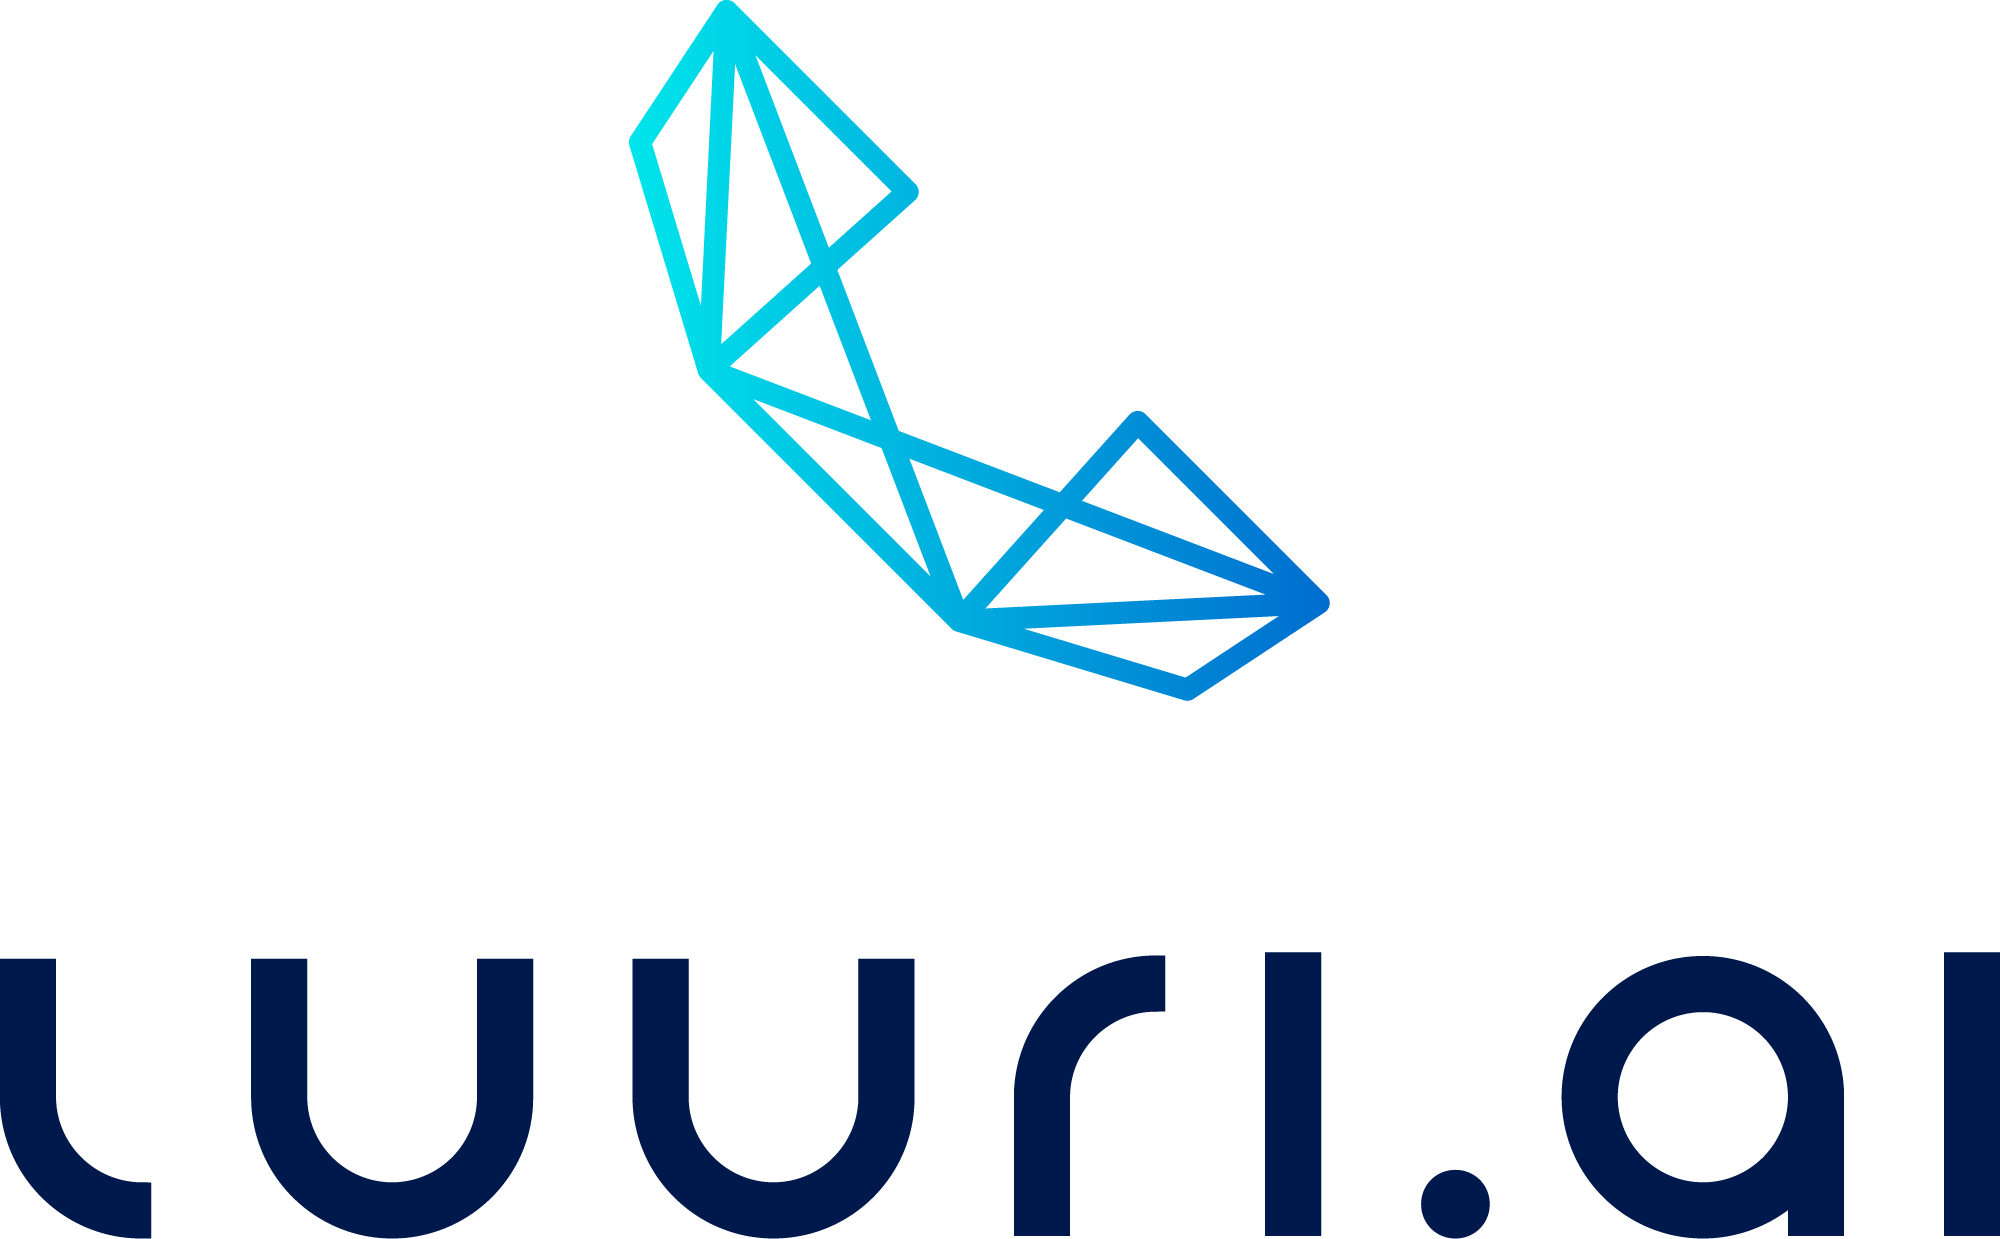 Yrityksen logo